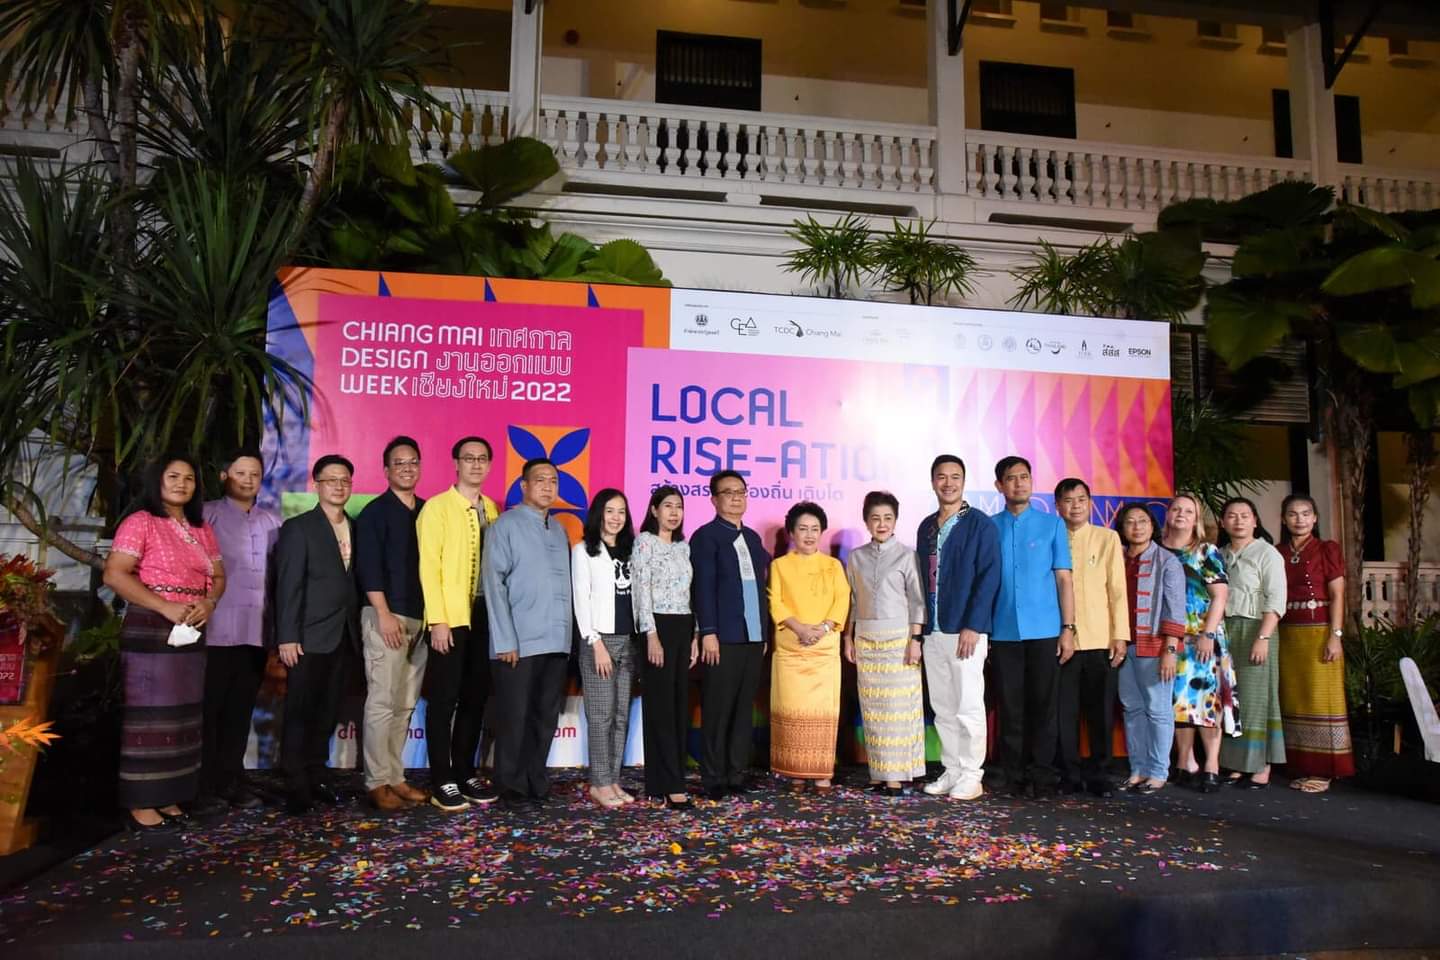 งานเทศกาลงานออกแบบเชียงใหม่ (Chiang Mai Design Week) 2022 Local ‘Rise’ation สร้างสรรค์ ท้องถิ่น เติบโต